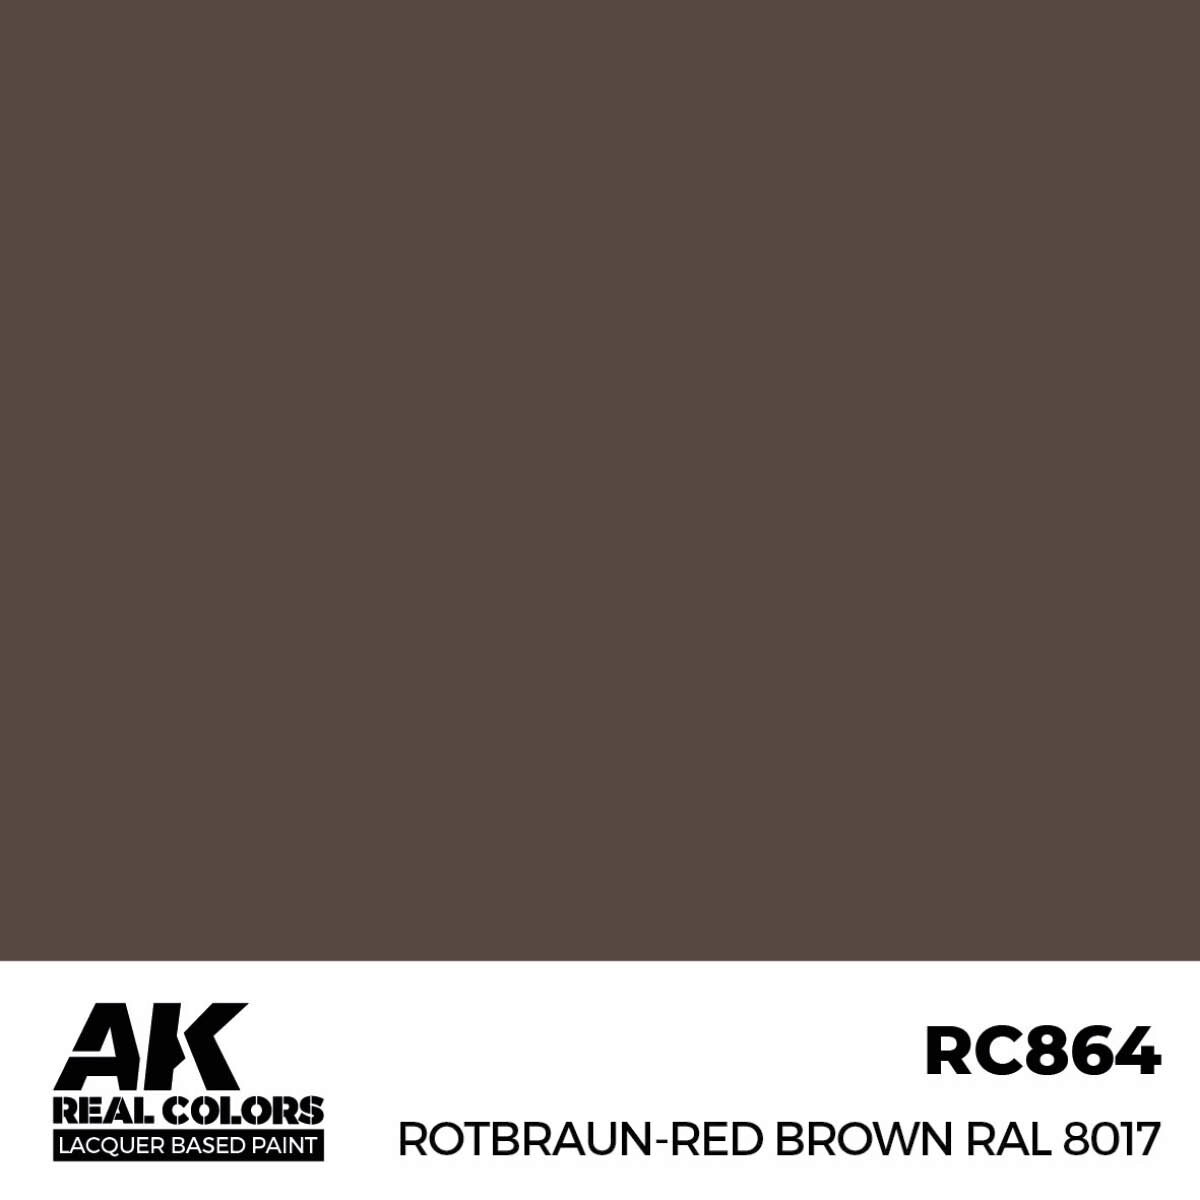 AK RC864 Real Colors Rotbraun-Red Brown RAL 8017 17 ml.